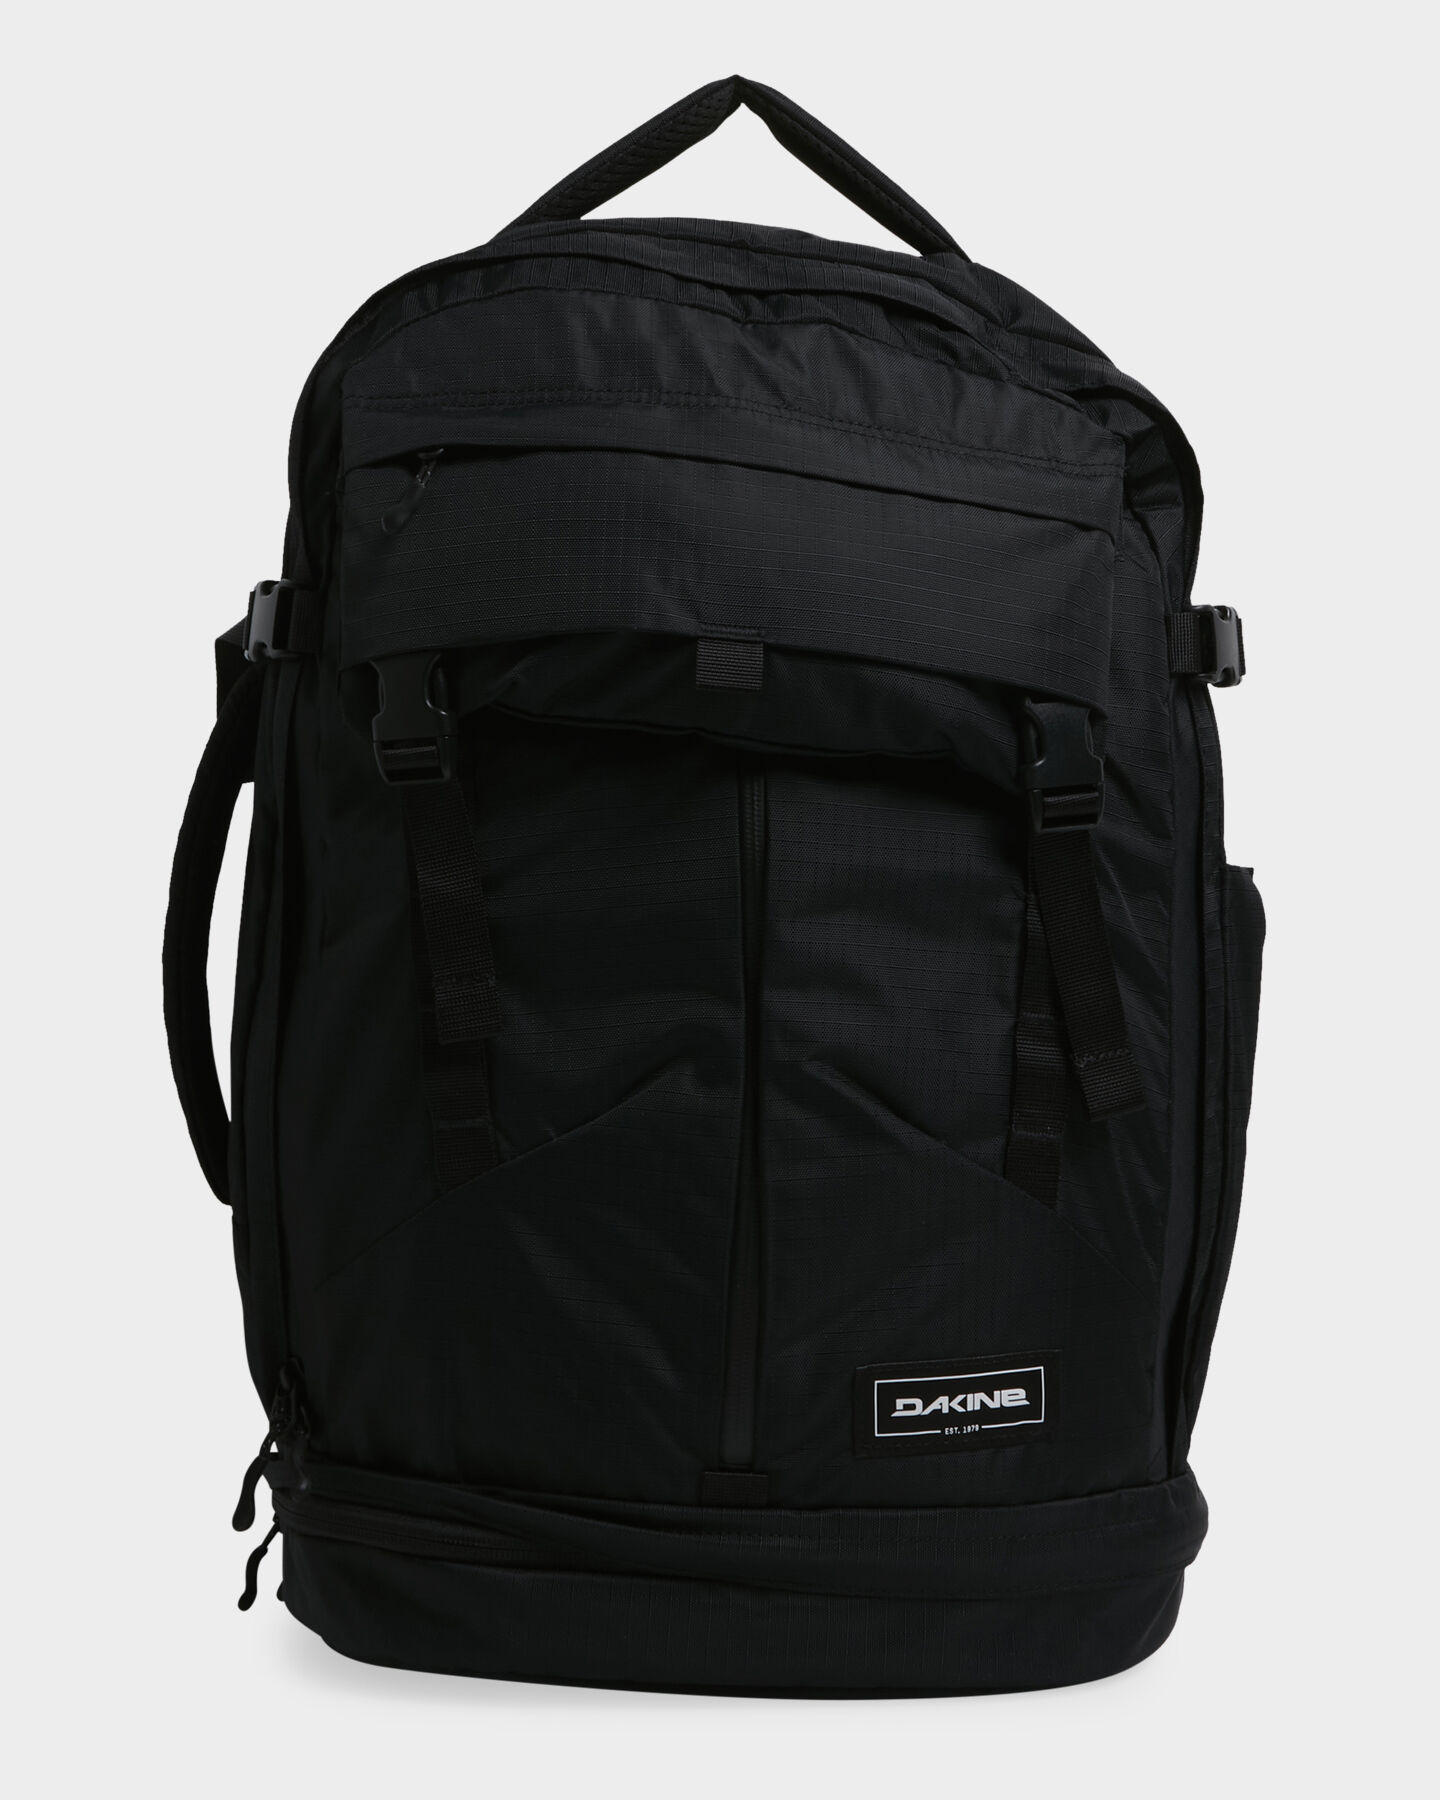 DAKINE Verge Backpack 32L glamor model | sale up to 60% off